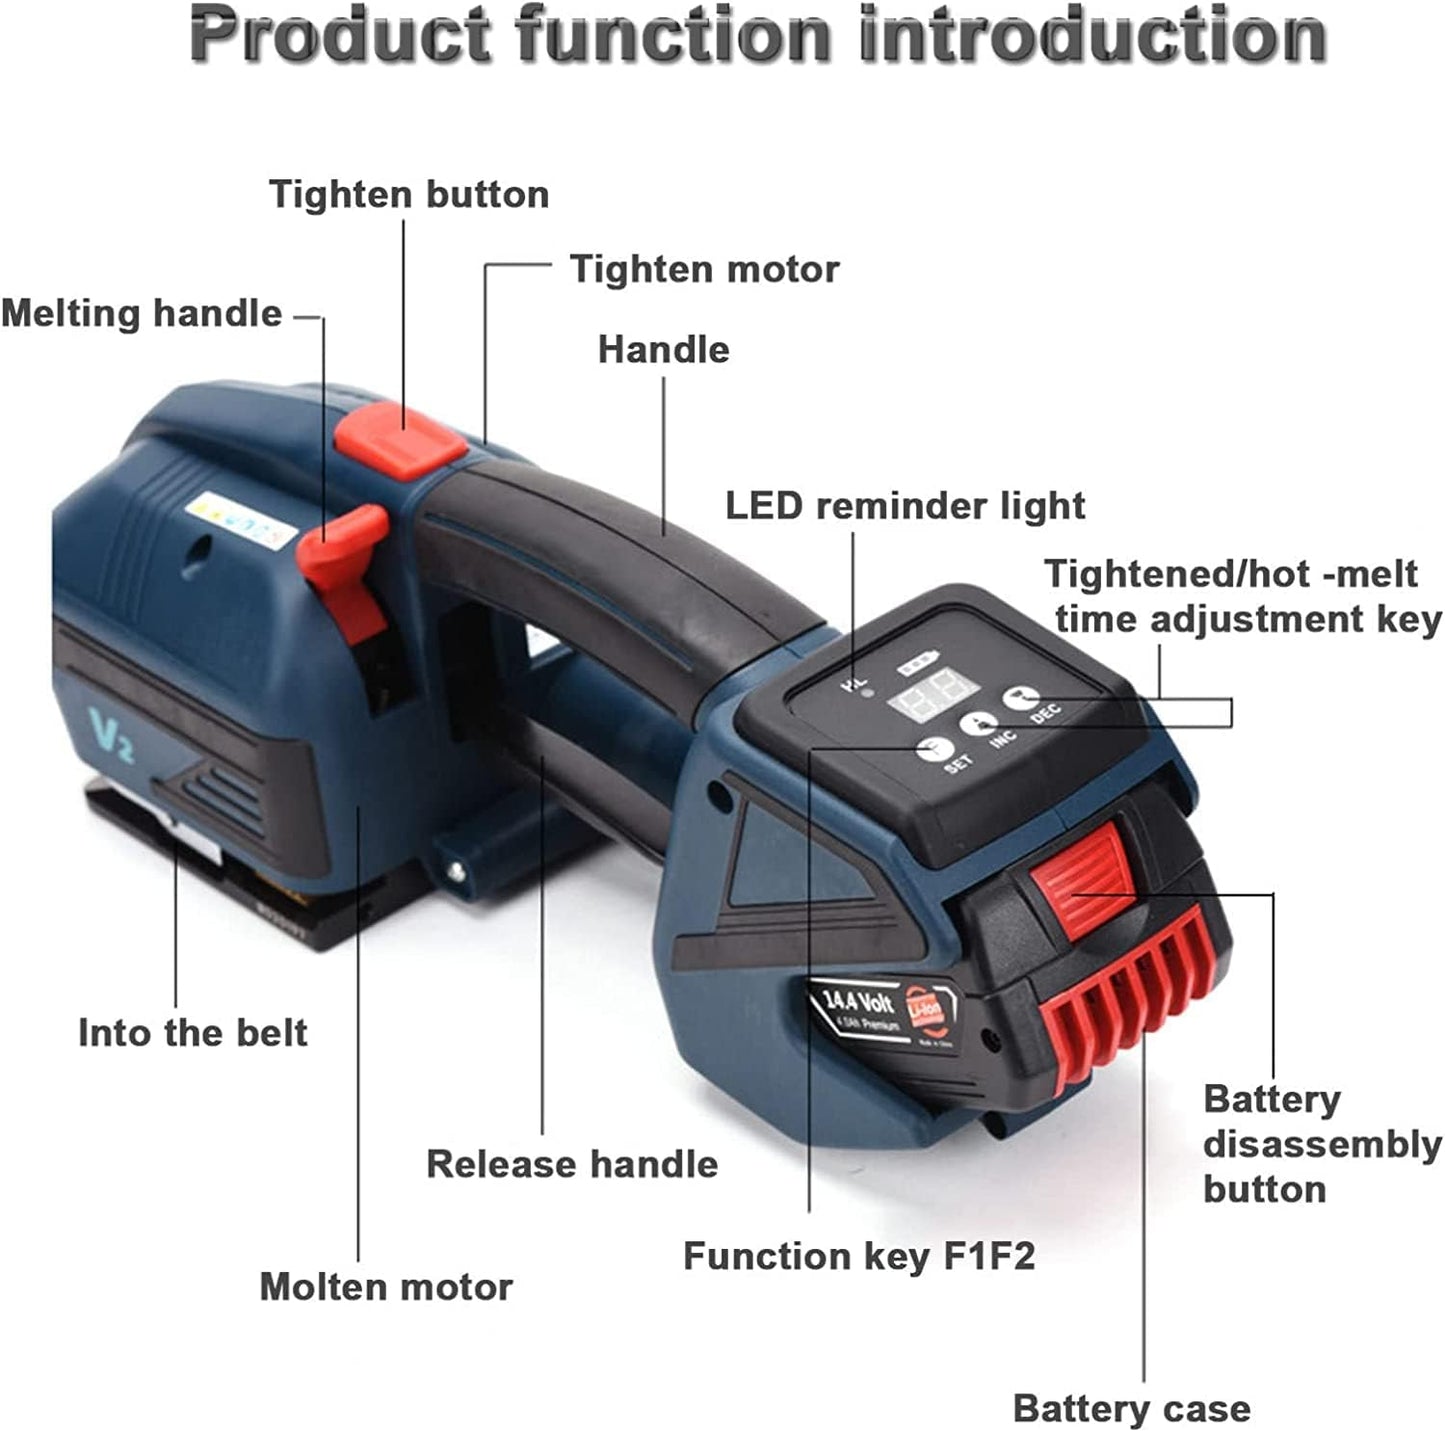 LIUSP Elektrische Umreifungsmaschine, tragbare Verpackungskarton-Palettenpresse, 4000-mAh-Akku für 1/2-5/8-Zoll-Bänder, automatisches Umreifungswerkzeug